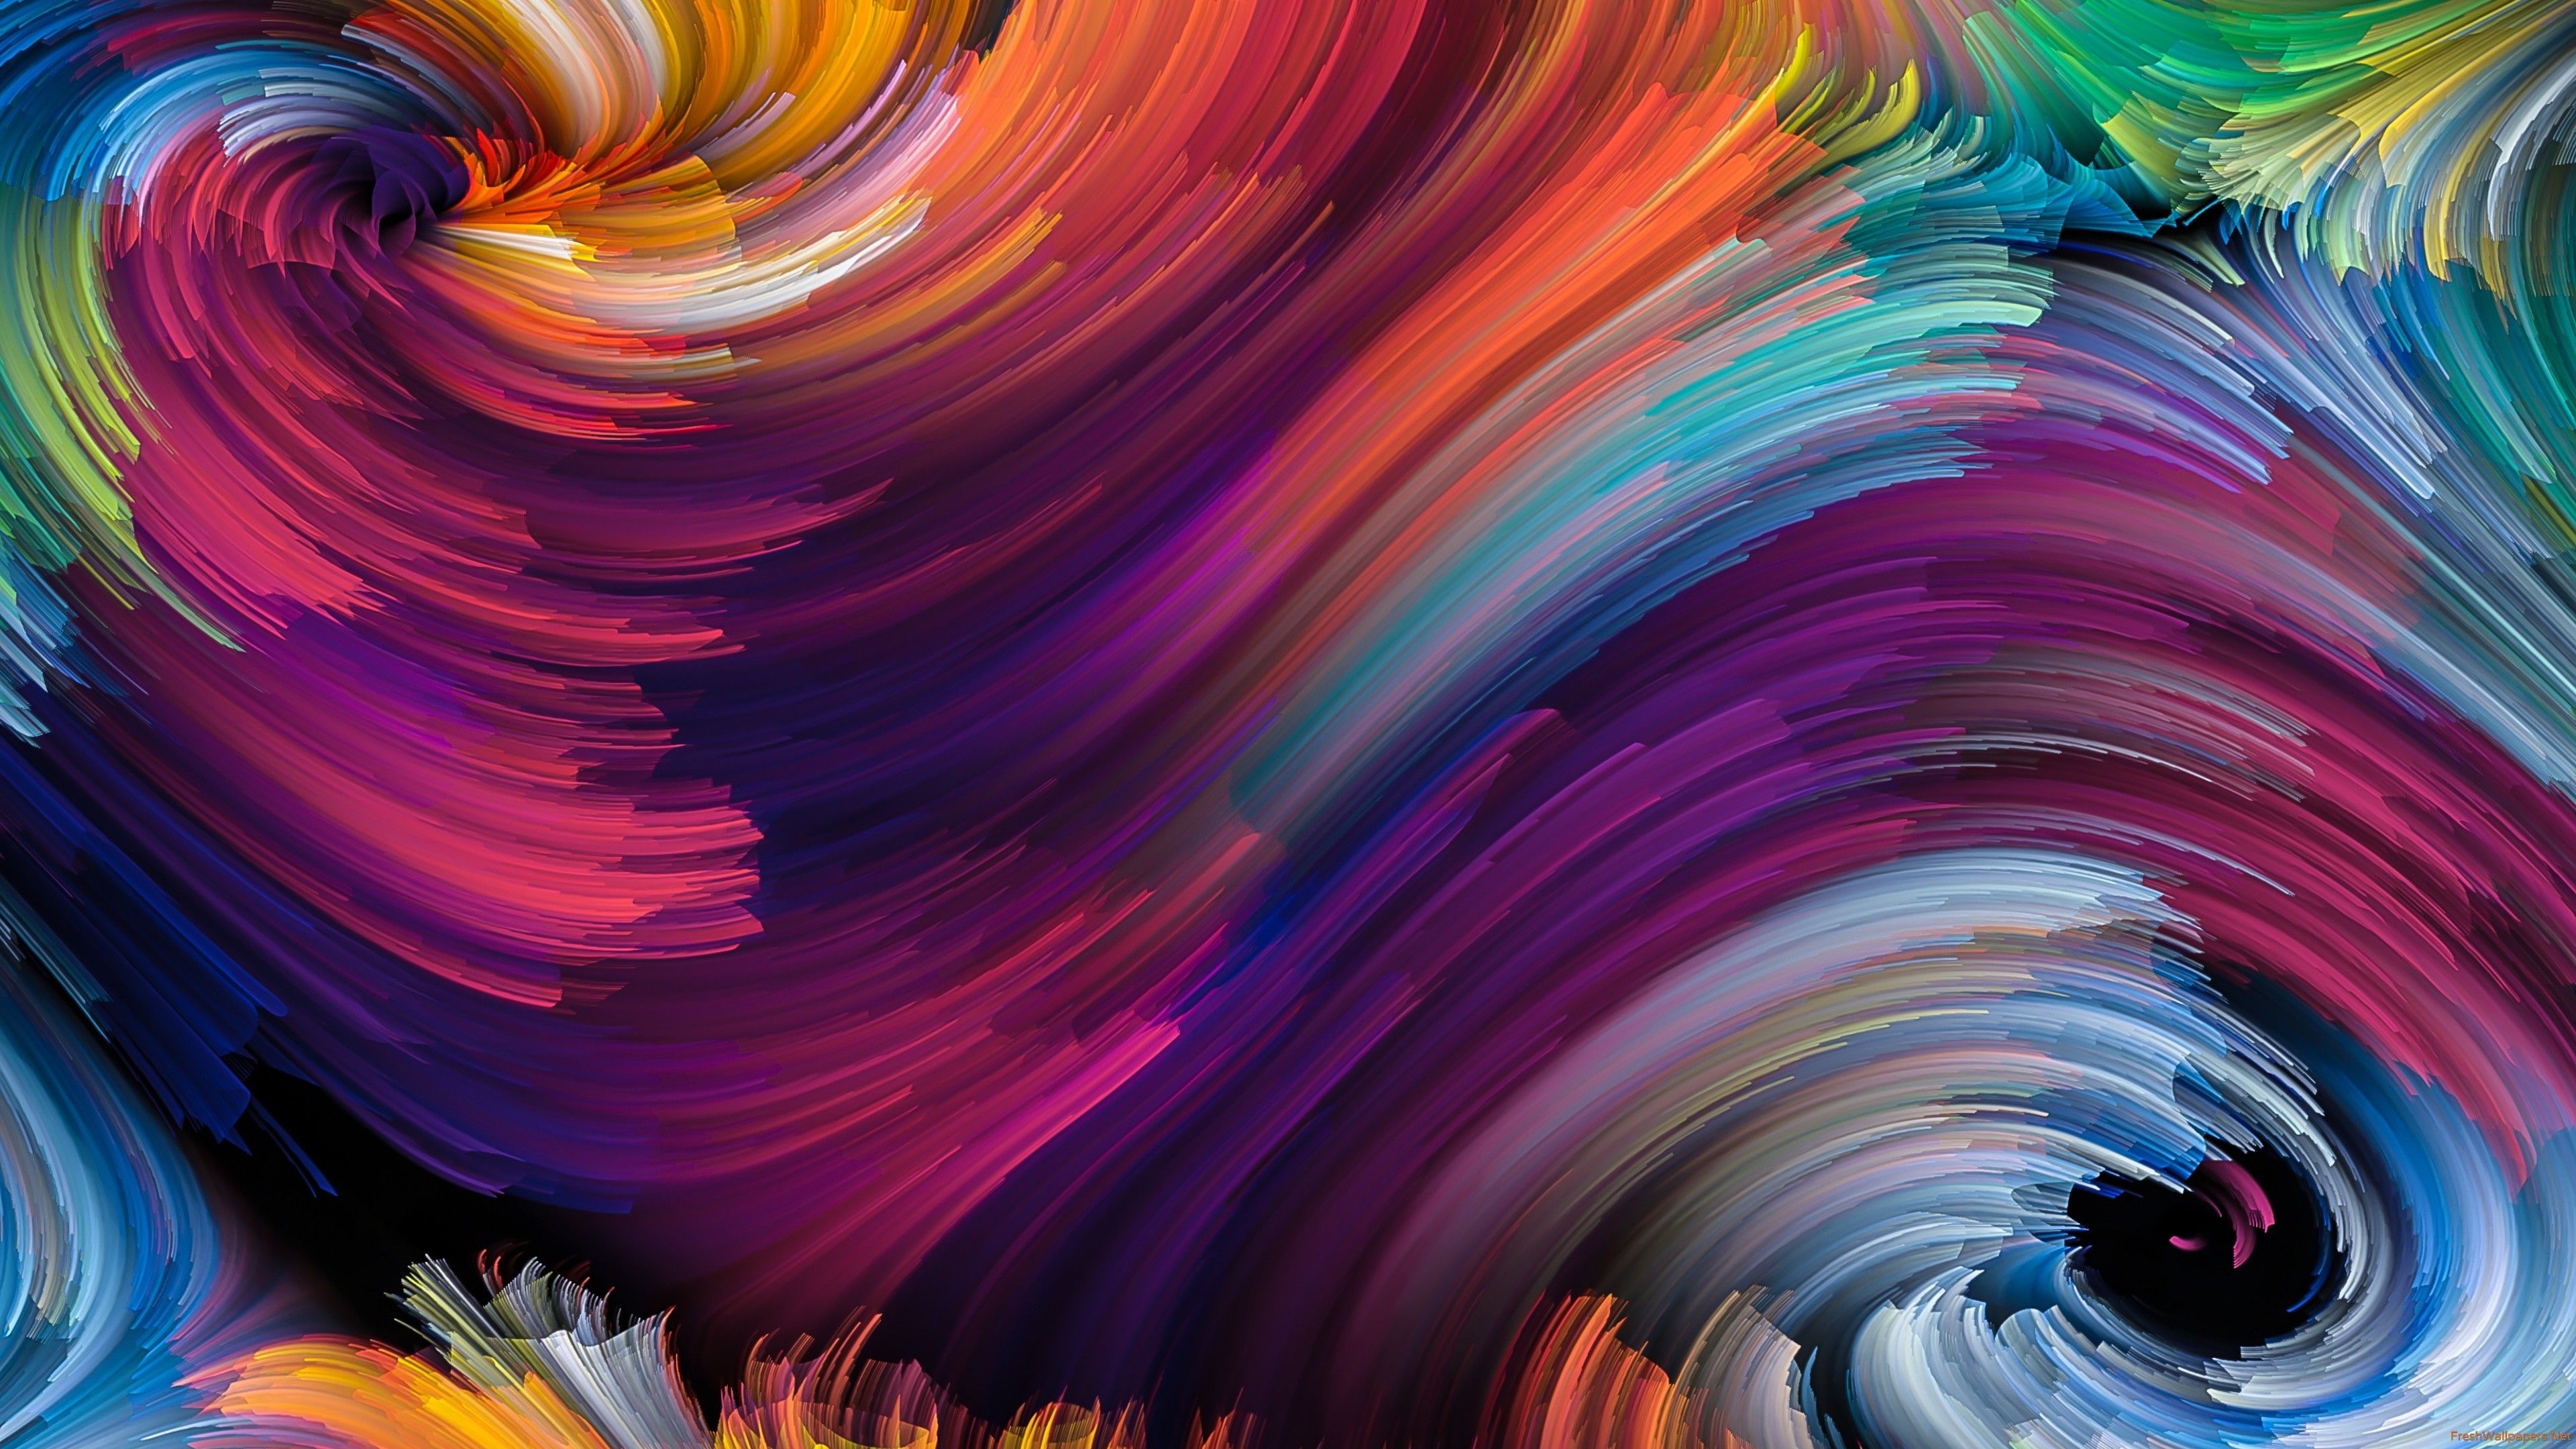 Color Abstract Brackdrops Spiral 4k fondos de pantalla | Papeles pintados frescos